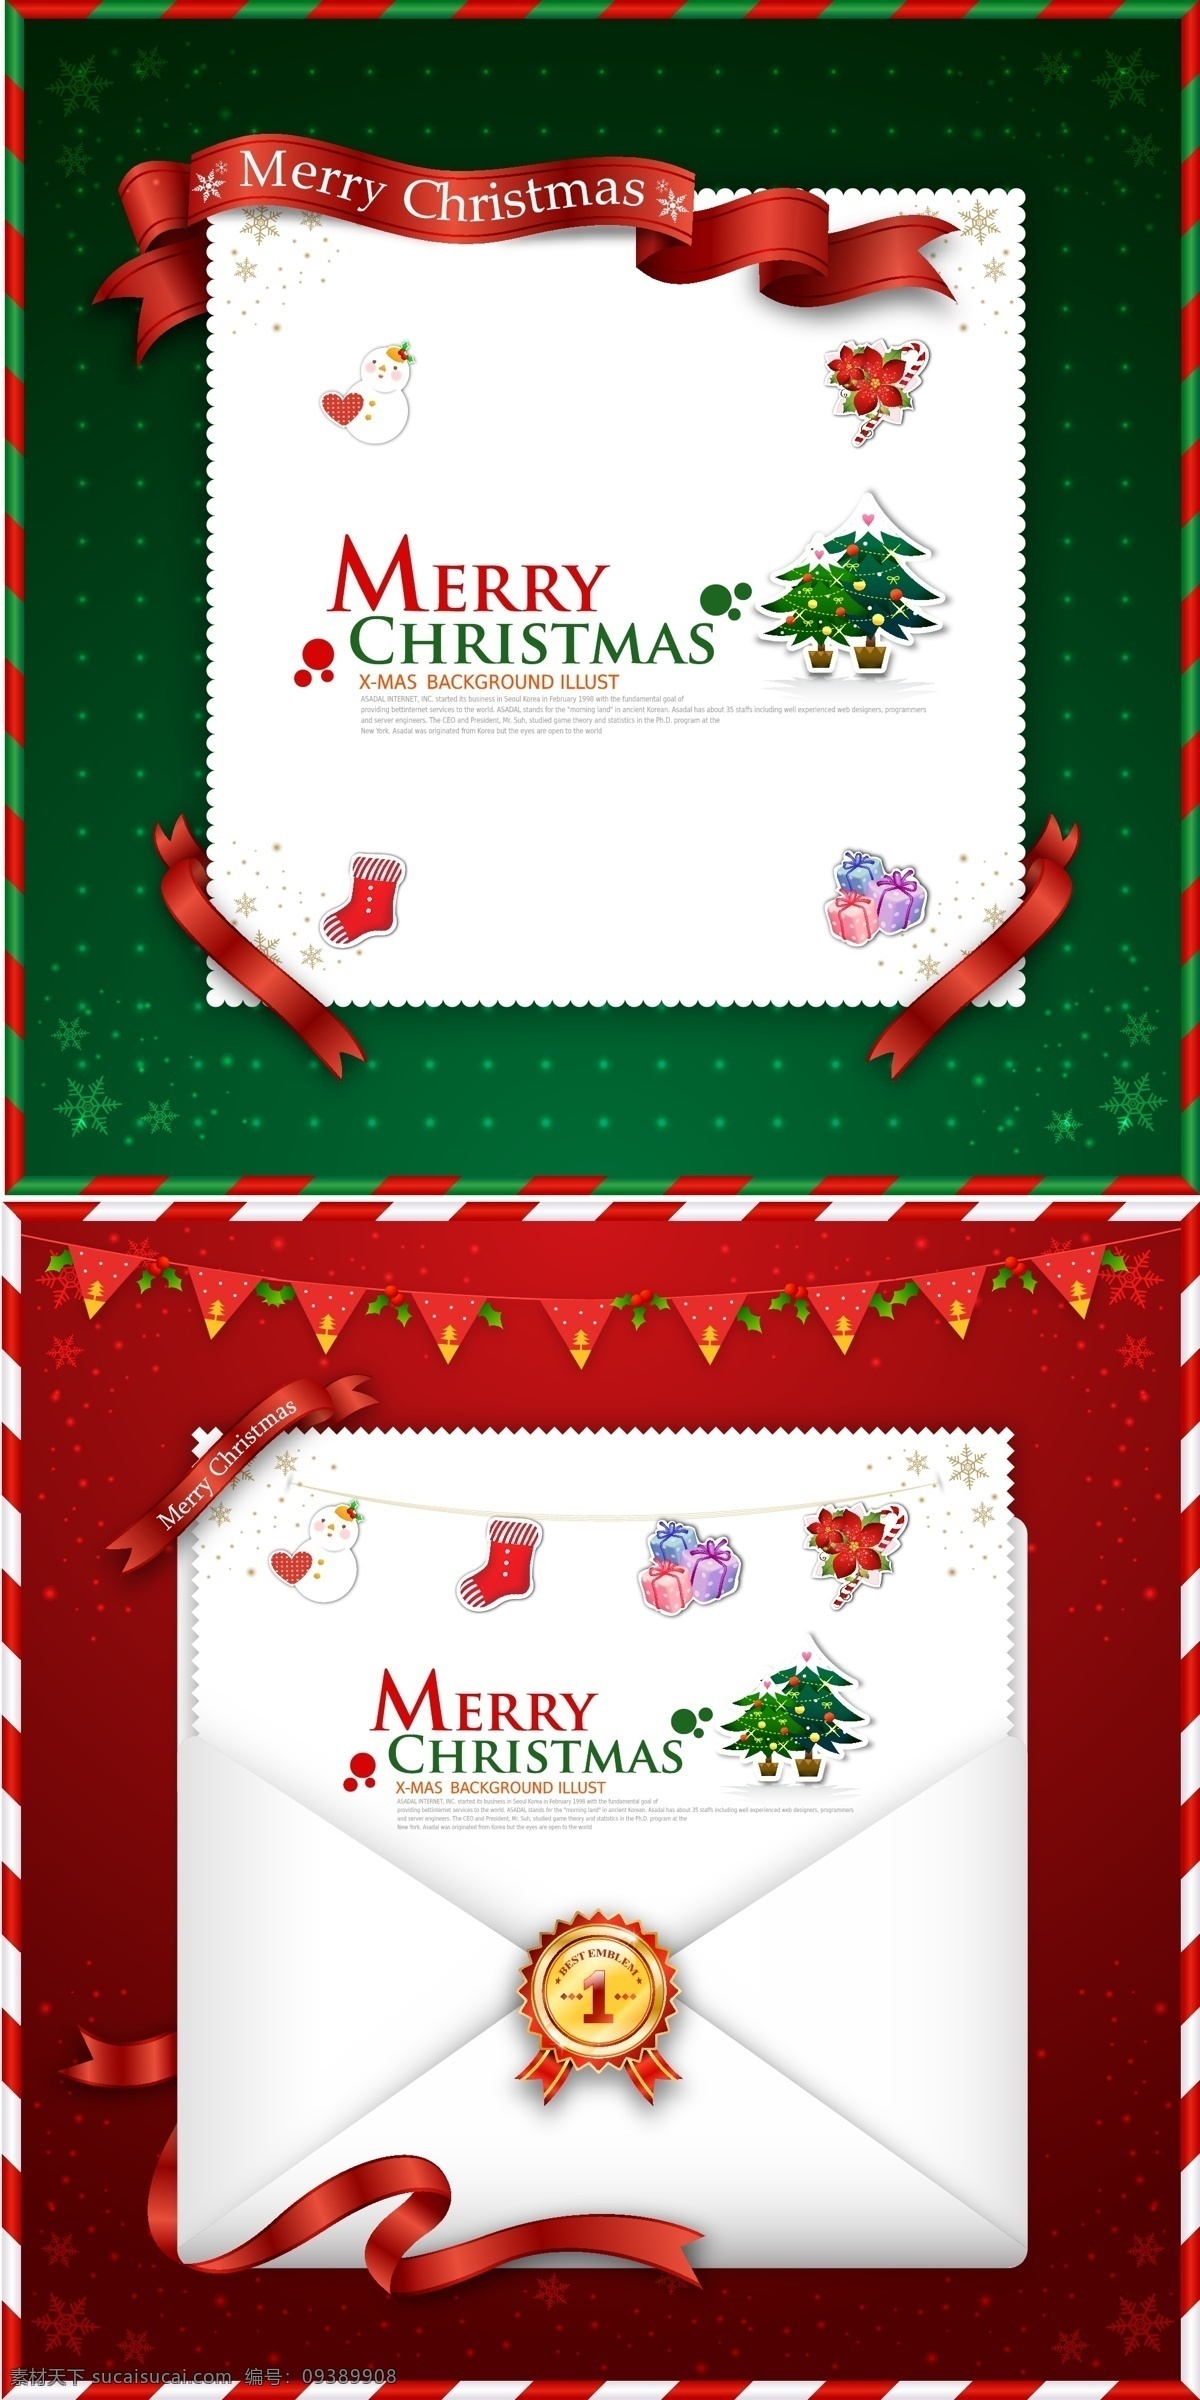 圣诞贺卡 信封 矢量 包裹 插画 卡通 礼盒 圣诞 圣诞老人 圣诞树 雪人 幽灵公主小余 矢量图 其他矢量图